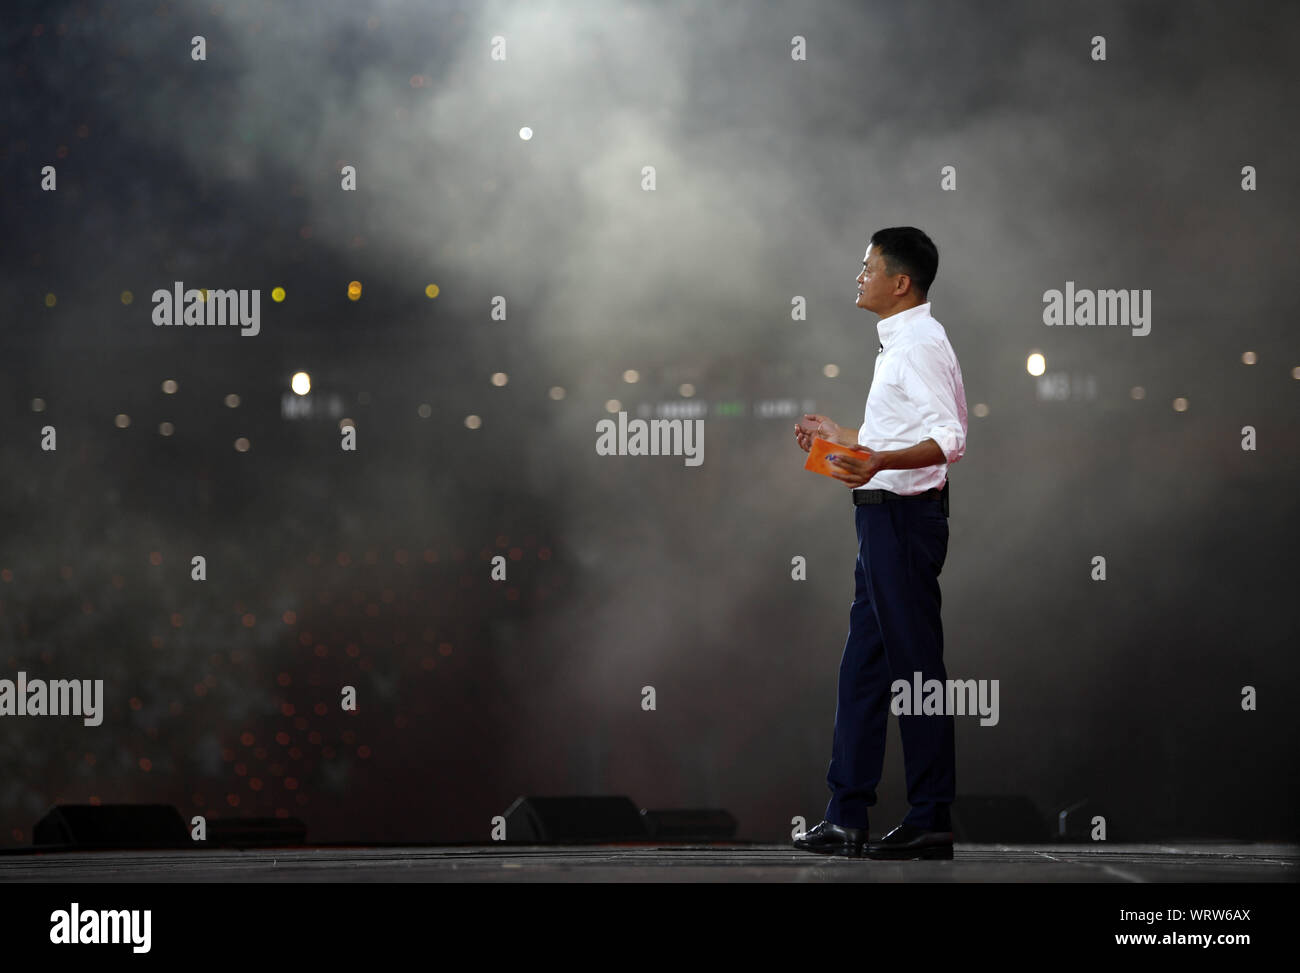 (190911) - Hangzhou, Sept. 11, 2019 (Xinhua) - Jack Ma gibt eine Rede an einer Funktion des 20-jährigen Jubiläums des Alibaba Group in Hangzhou, der Hauptstadt der ostchinesischen Provinz Zhejiang, Sept. 10, 2019. Jack Ma offiziell trat als Vorsitzende der Gruppe der Alibaba Dienstag, Übergabe der Position für das Unternehmen CEO Daniel Zhang. Es ist ein besonderer Tag für die beiden chinesischen Milliardär und der e-commerce Riese er Co - gegründet. Ma, ein ehemaliger Englischlehrer, dreht 55 Dienstag, die auch den 20. Jahrestag der Alibaba Group gekennzeichnet und fiel mit Teachers' Day. Ma, übergab den CEO Position Stockfoto